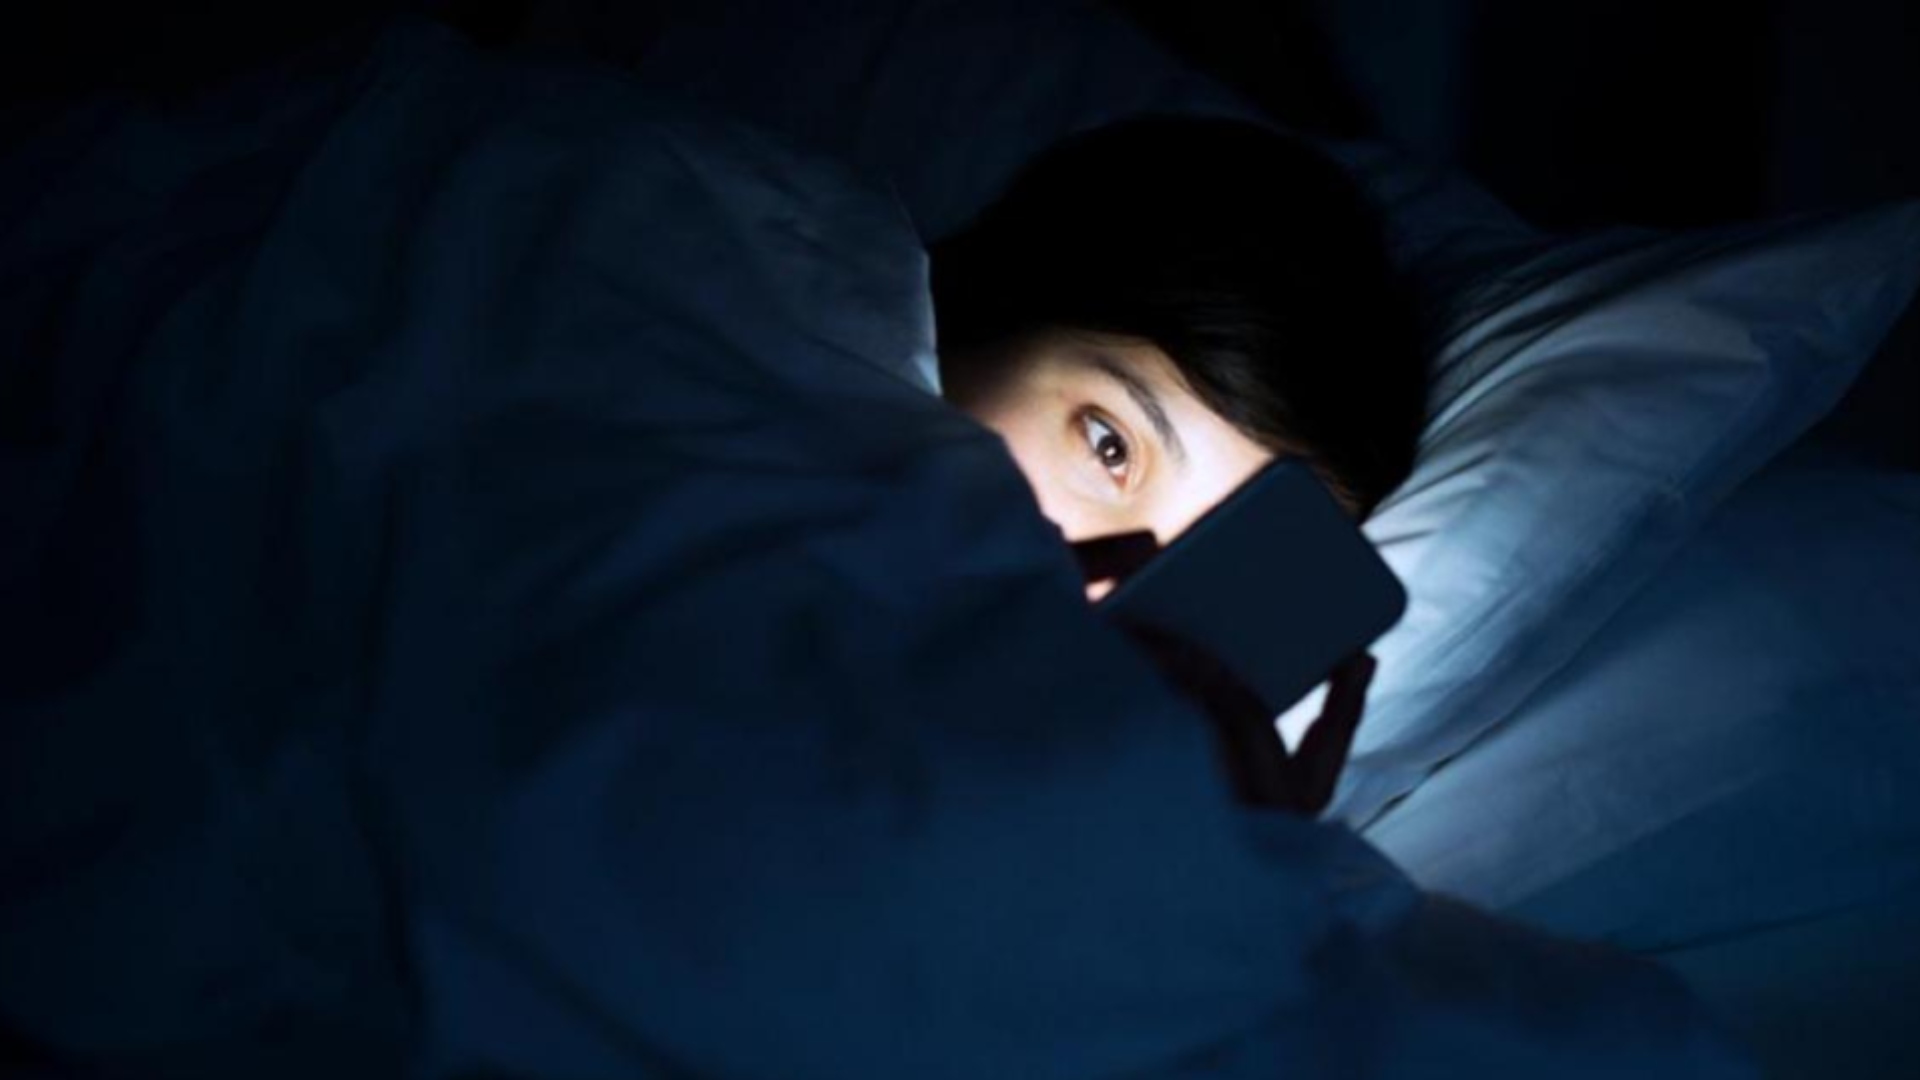 Ver tu teléfono antes de dormir podría traerte grandes consecuencias